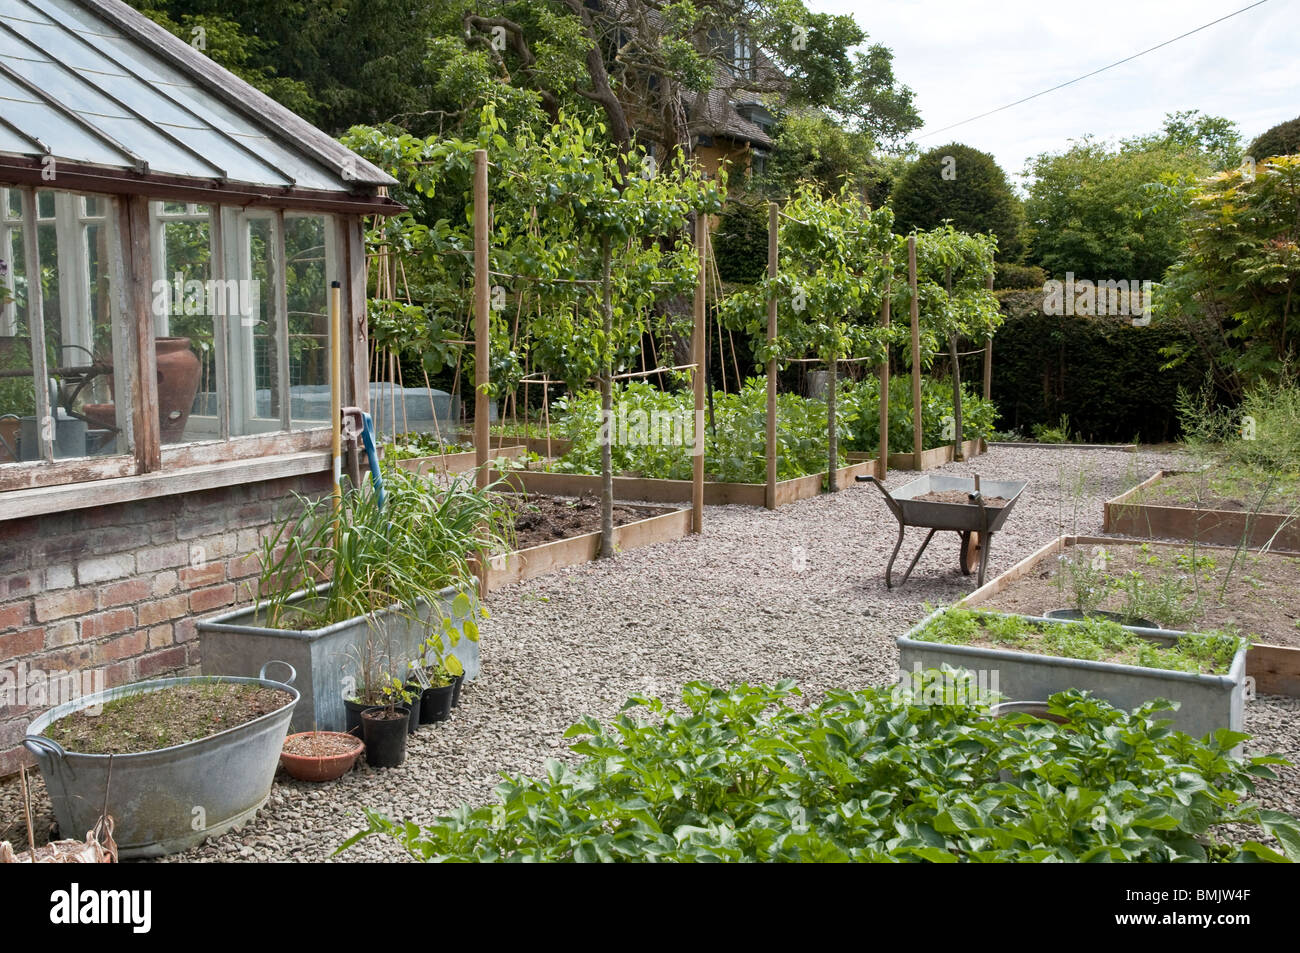 Jardin potager avec des lits surélevés, des contenants en zinc des sentiers en gravier à Bryan de rez-de-jardin, Stapleton, Herefordshire, UK Banque D'Images